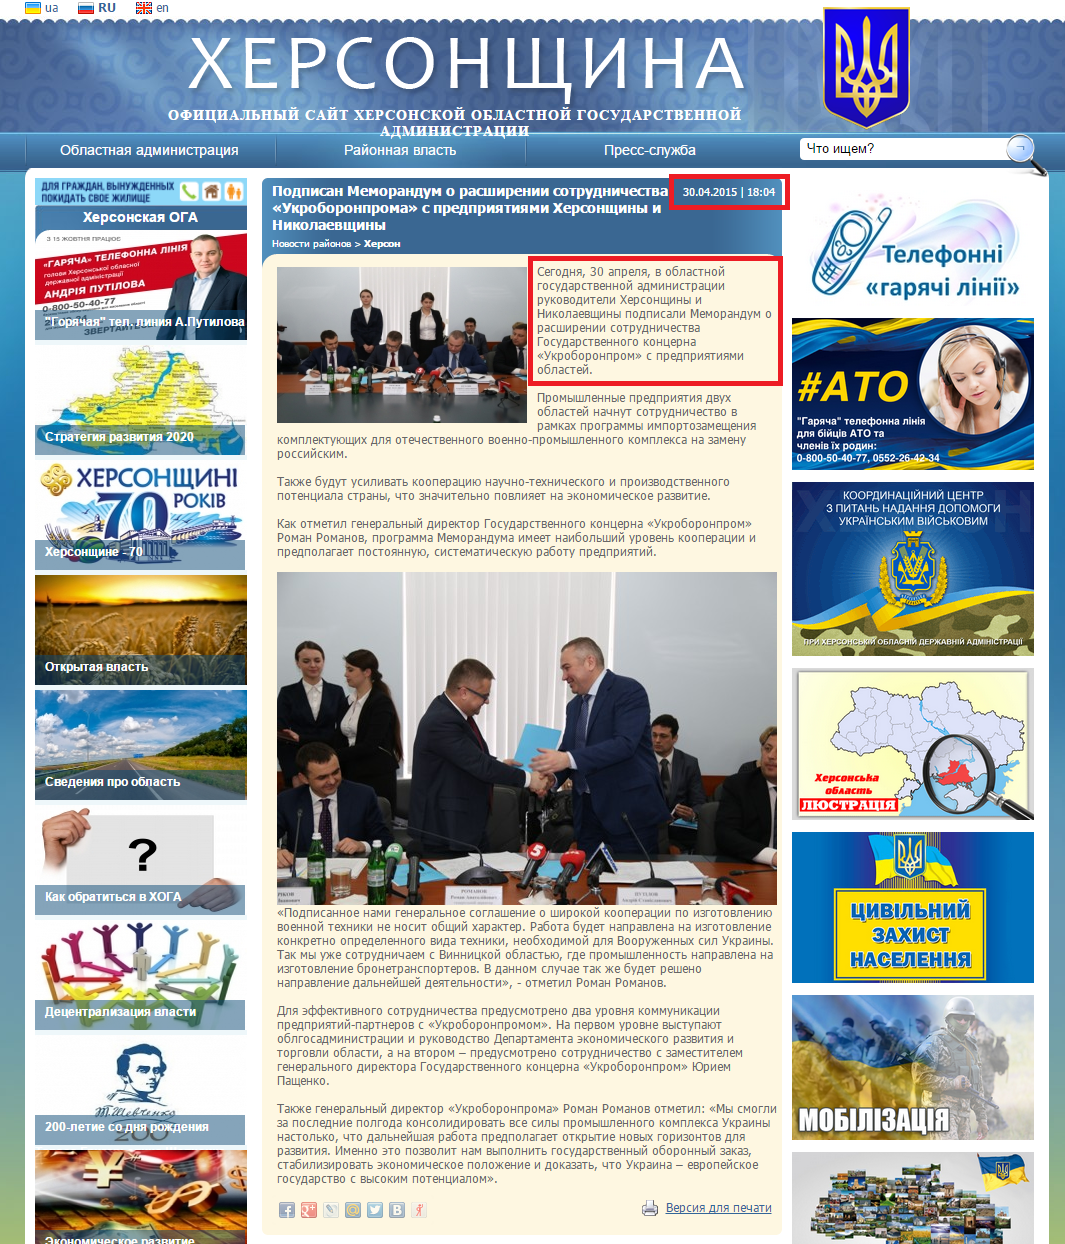 http://www.khoda.gov.ua/news/podpisan-memorandum-o-rasshirenii-sotrudnichestva-ukroboronproma-s-predpriyatiyami-hersonshhiny-i-ni